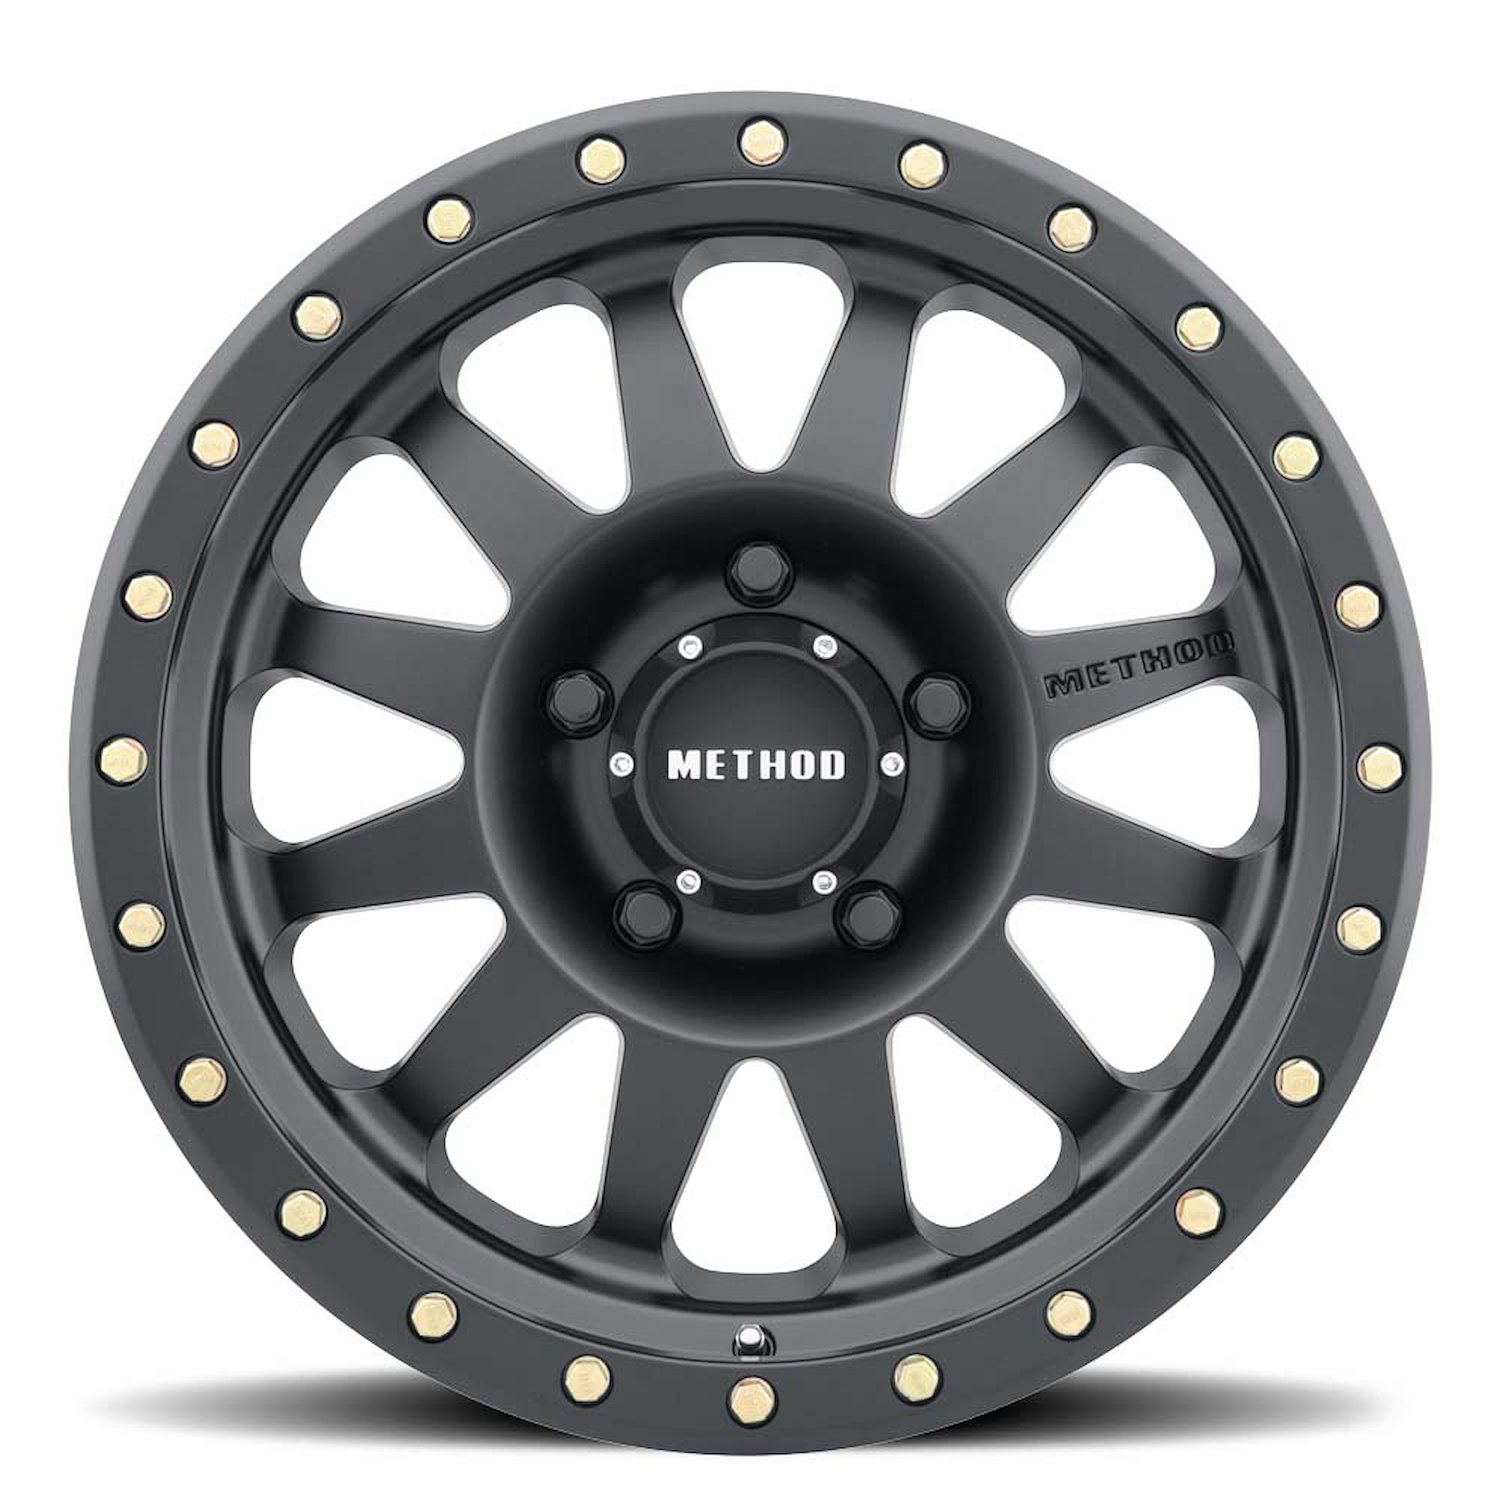 MR30478558500 STREET MR304 Double Standard Wheel [Size: 17" x 8.5"] Matte Black